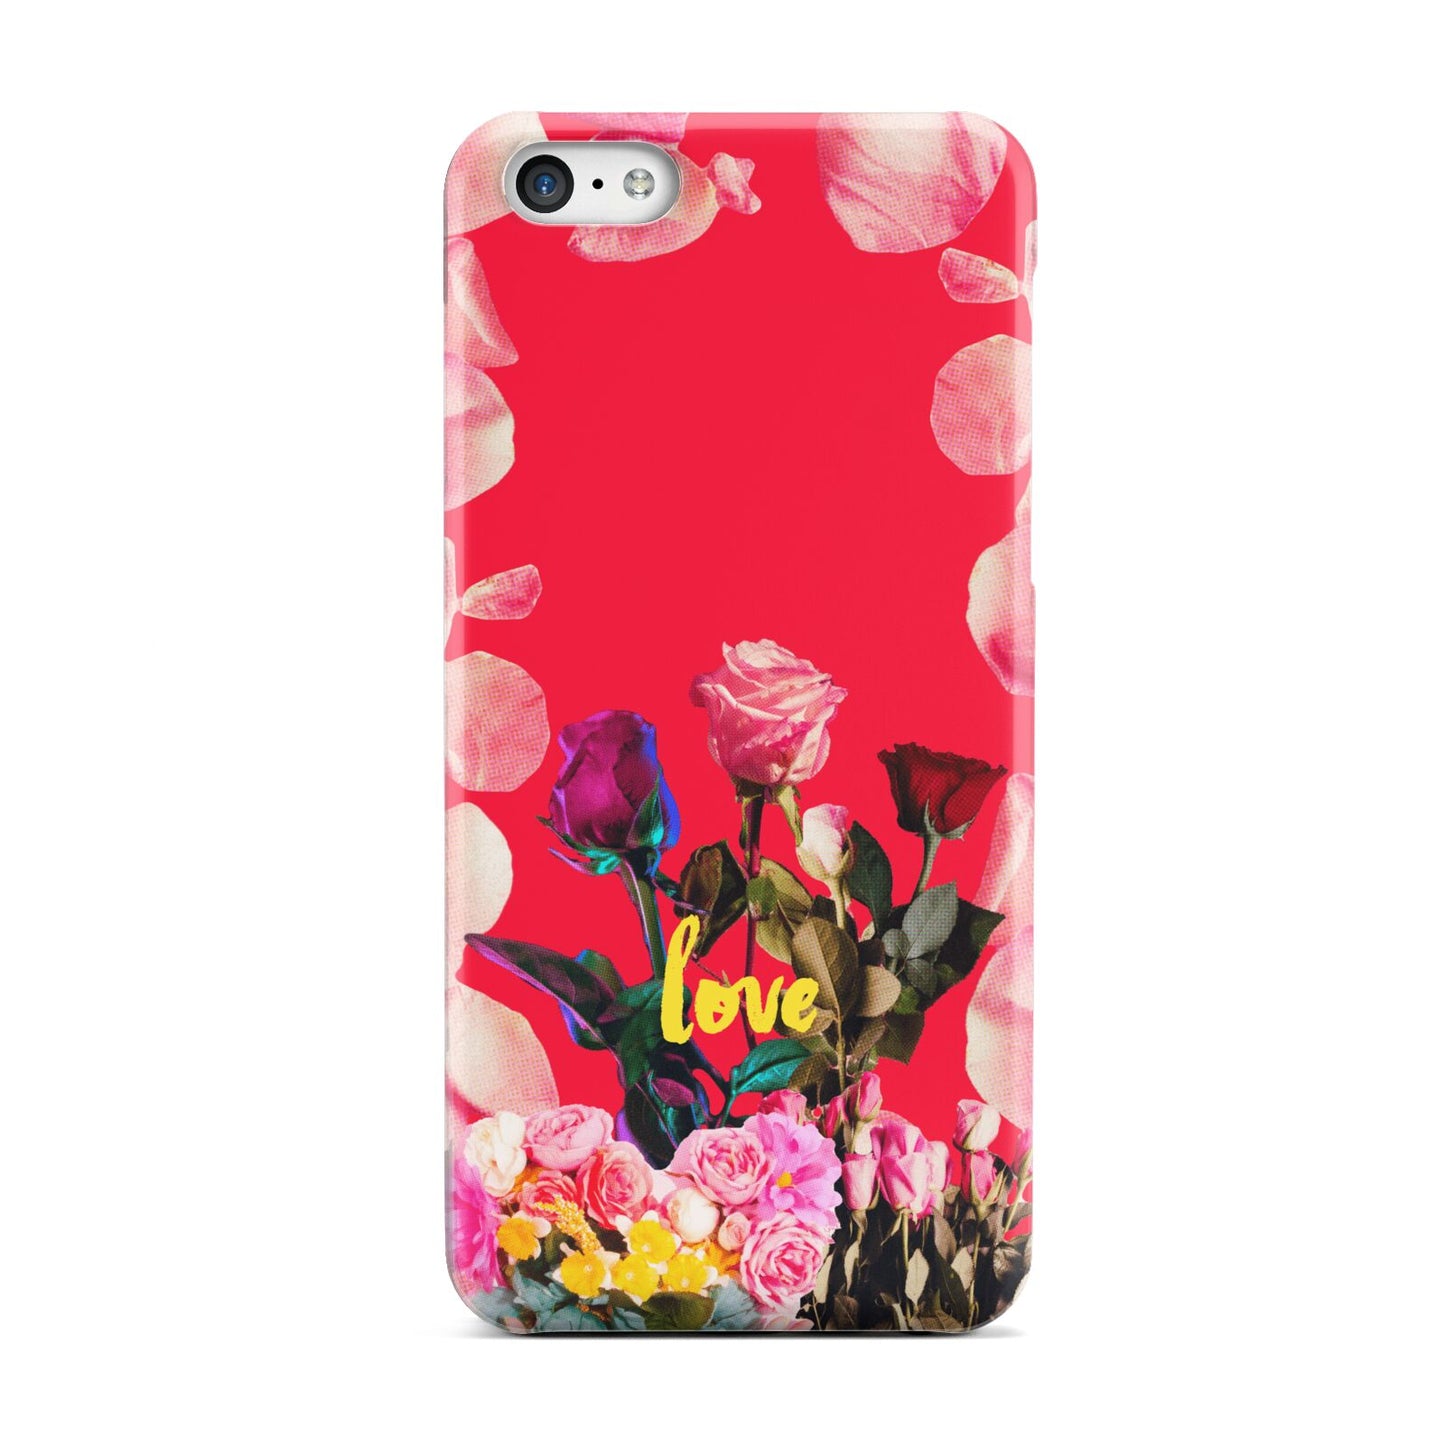 Retro Floral Valentine Apple iPhone 5c Case